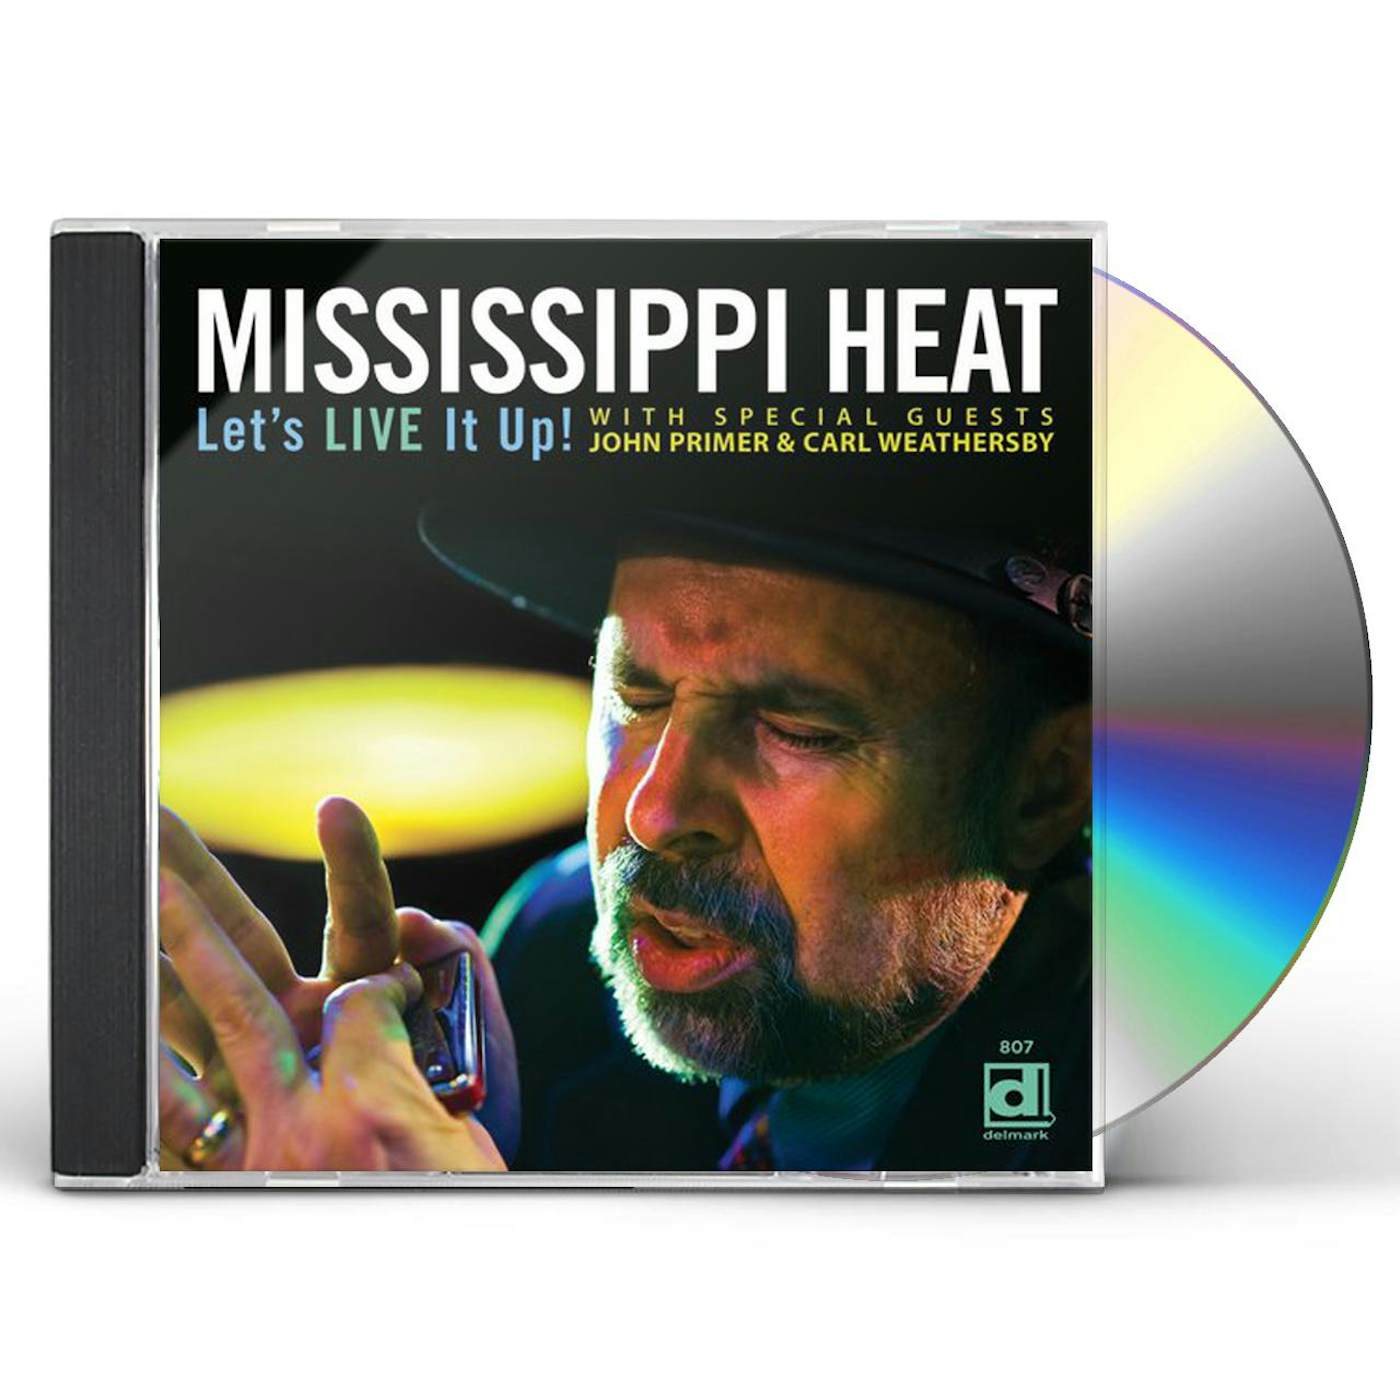 Mississippi Heat LET'S LIVE IT UP CD